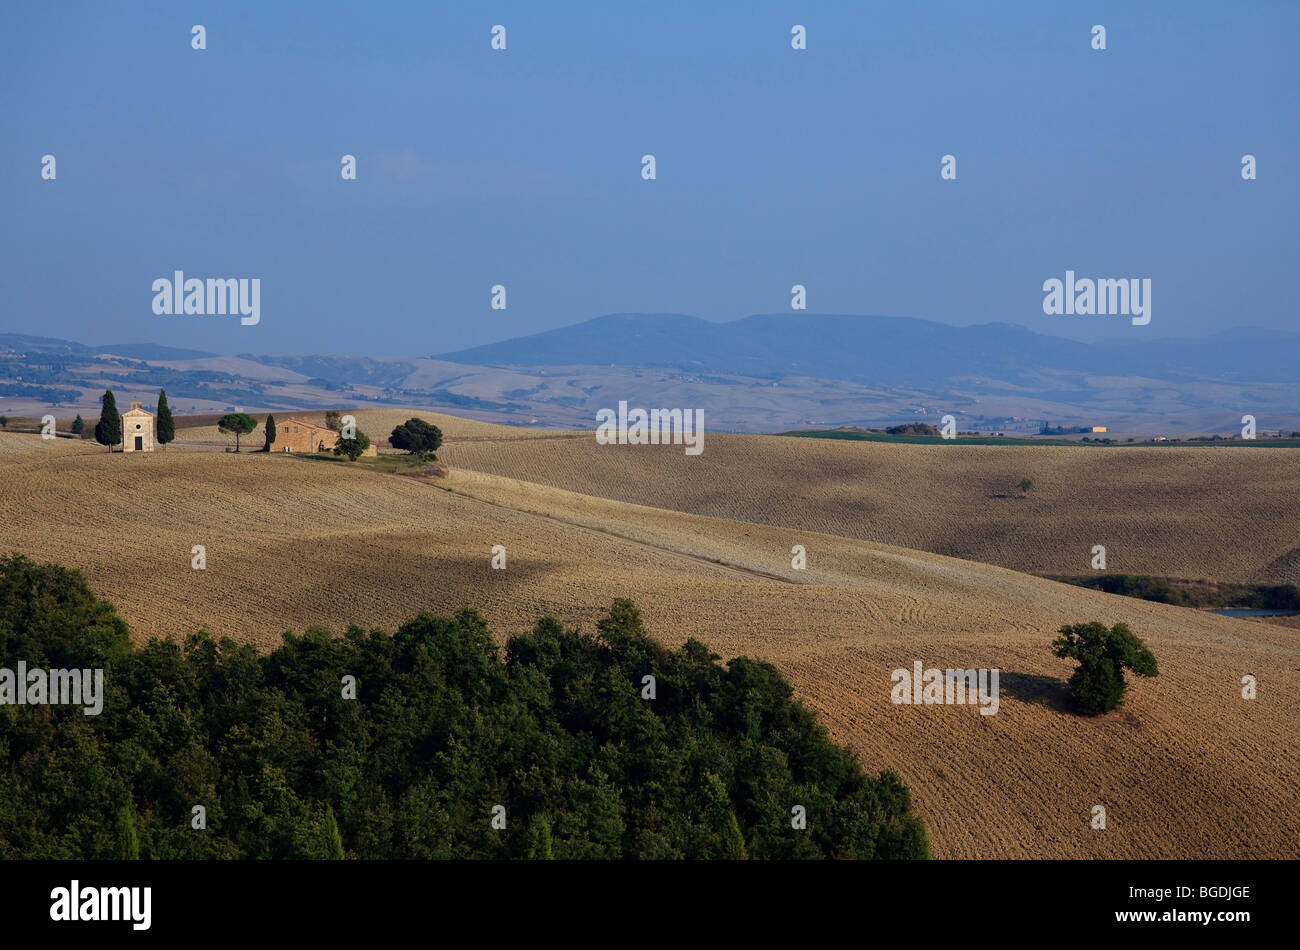 Chiesa di Vitaleta e fattoria in campi arati nei pressi di San Quirico d'Orcia e la Toscana, Italia. Foto Stock